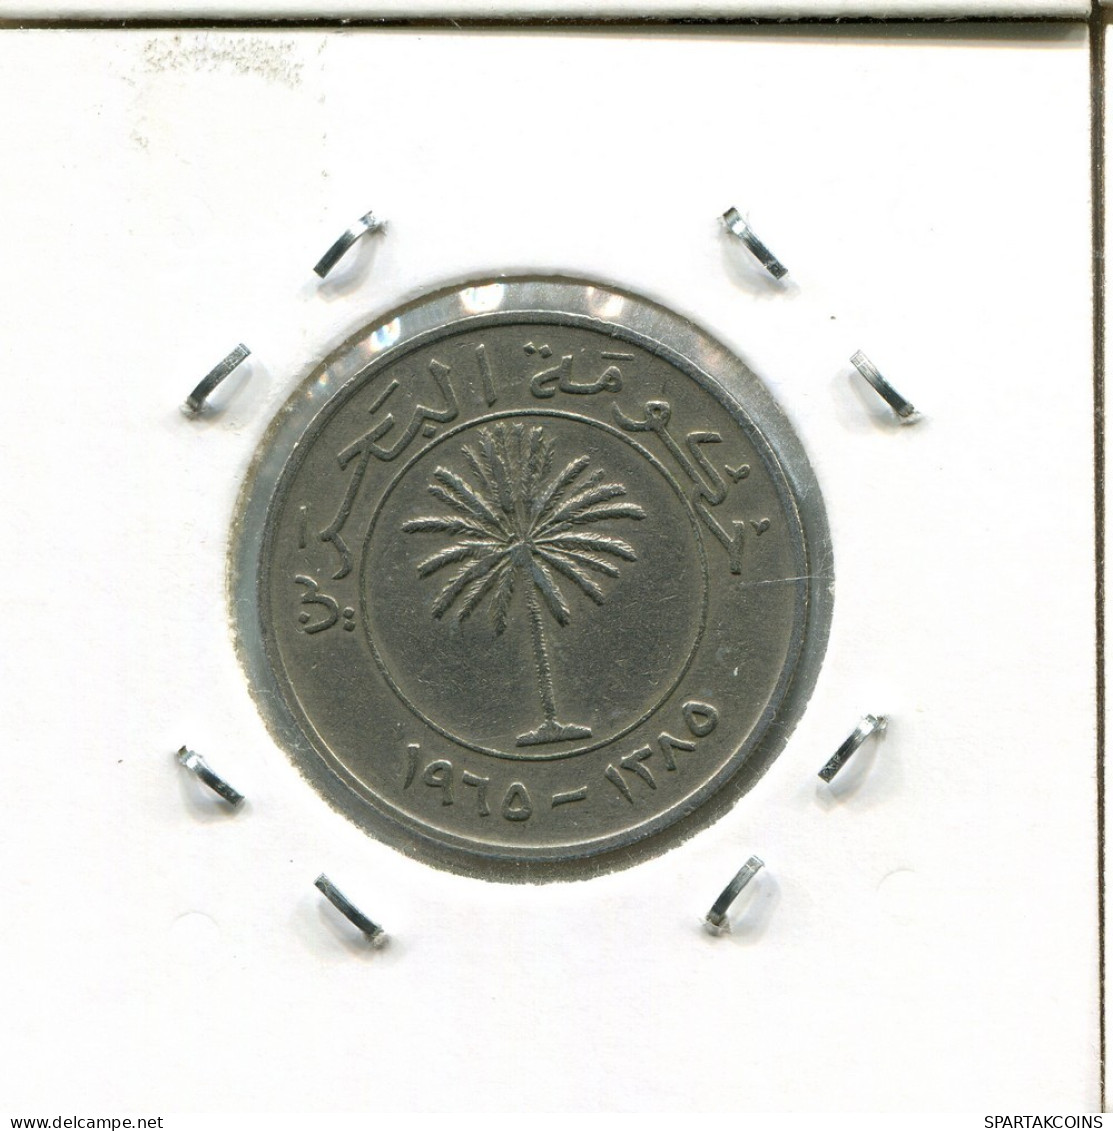 100 FILS 1965 BAHREIN BAHRAIN Islámico Moneda #AS135.E.A - Bahreïn